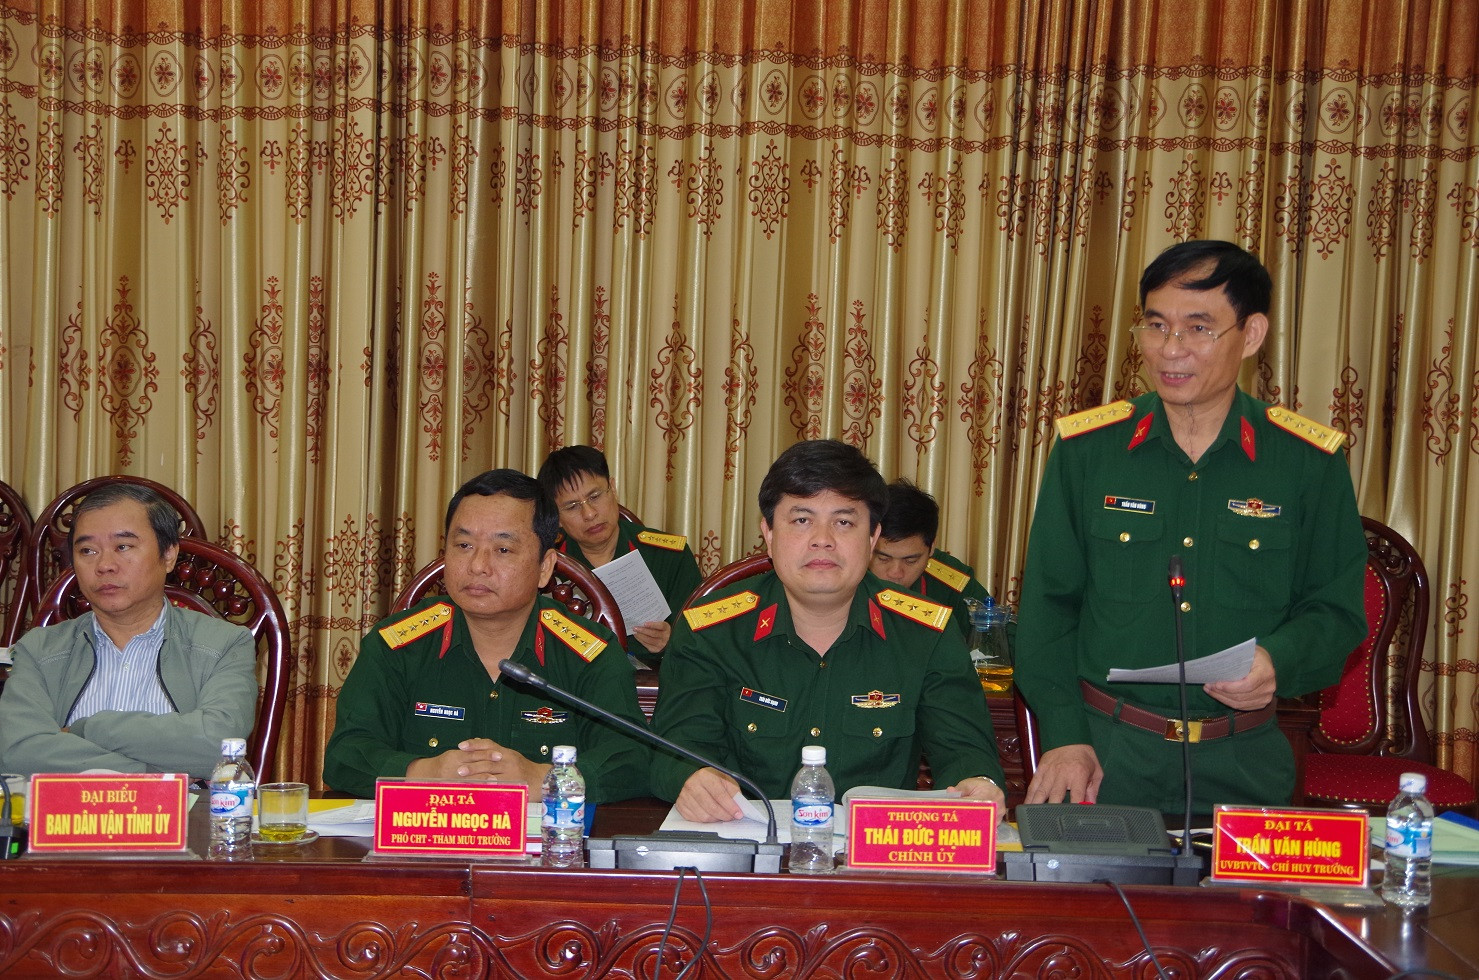 Đại tá Trần Văn Hùng - Ủy viên Ban Thường vụ Tỉnh ủy, Chỉ huy trưởng Bộ CHQS tỉnh phát biểu chỉ đạo tại hội nghị. Ảnh: Trọng Kiên